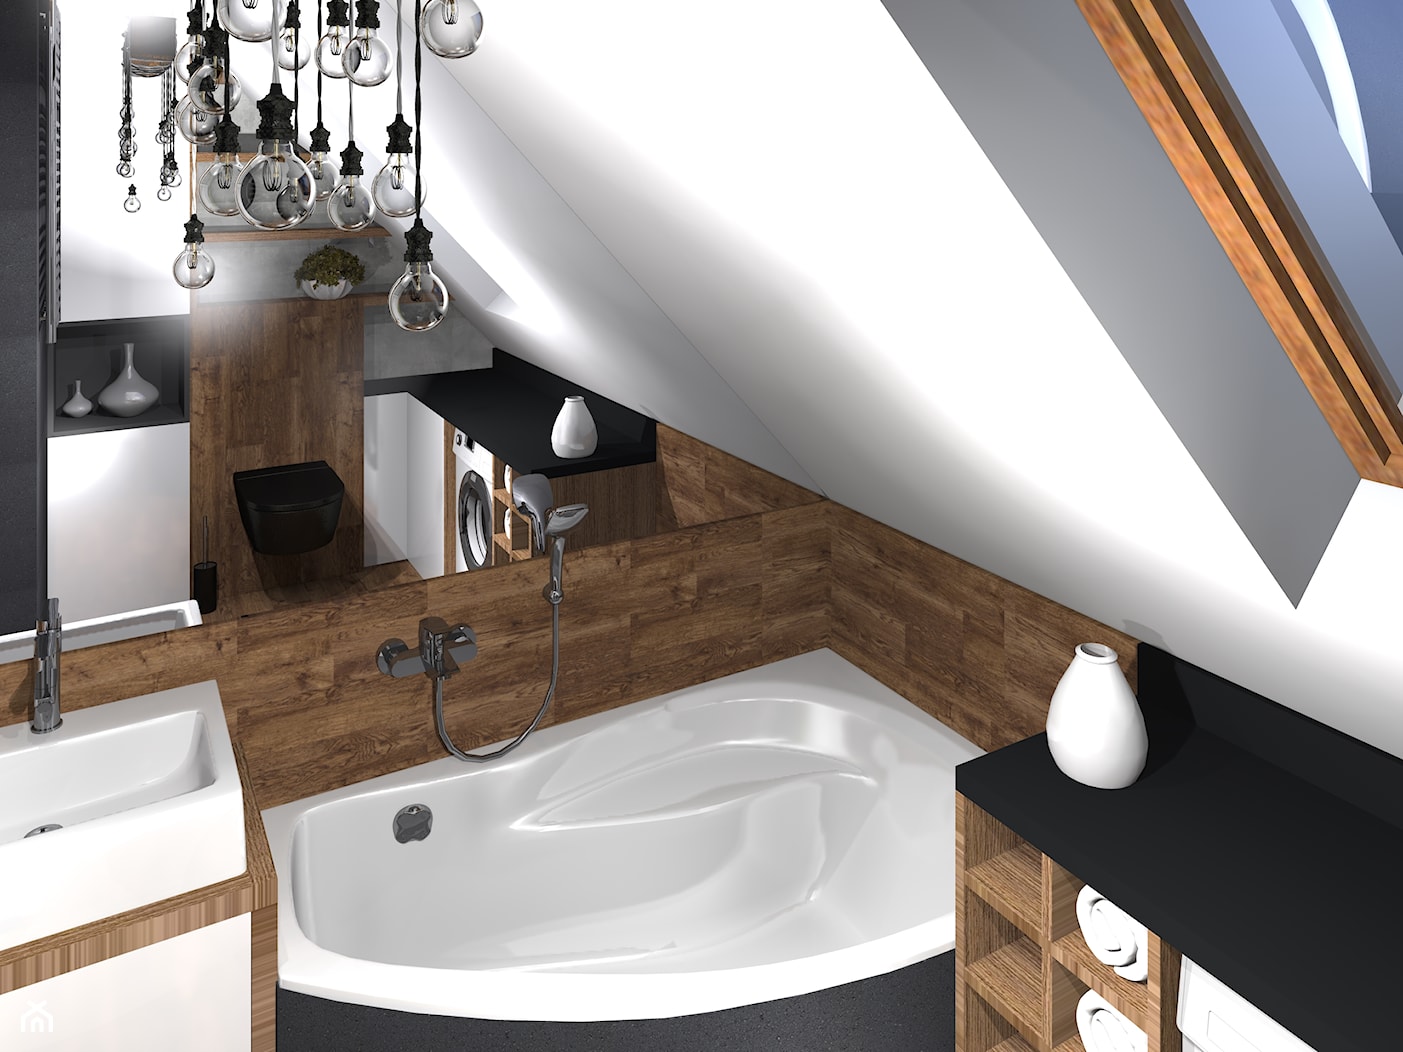 Drewniana łazienka z rustykalną lampą - zdjęcie od MalgoWy Projektuje, arch. Małgorzata Wyrzykowska - Homebook